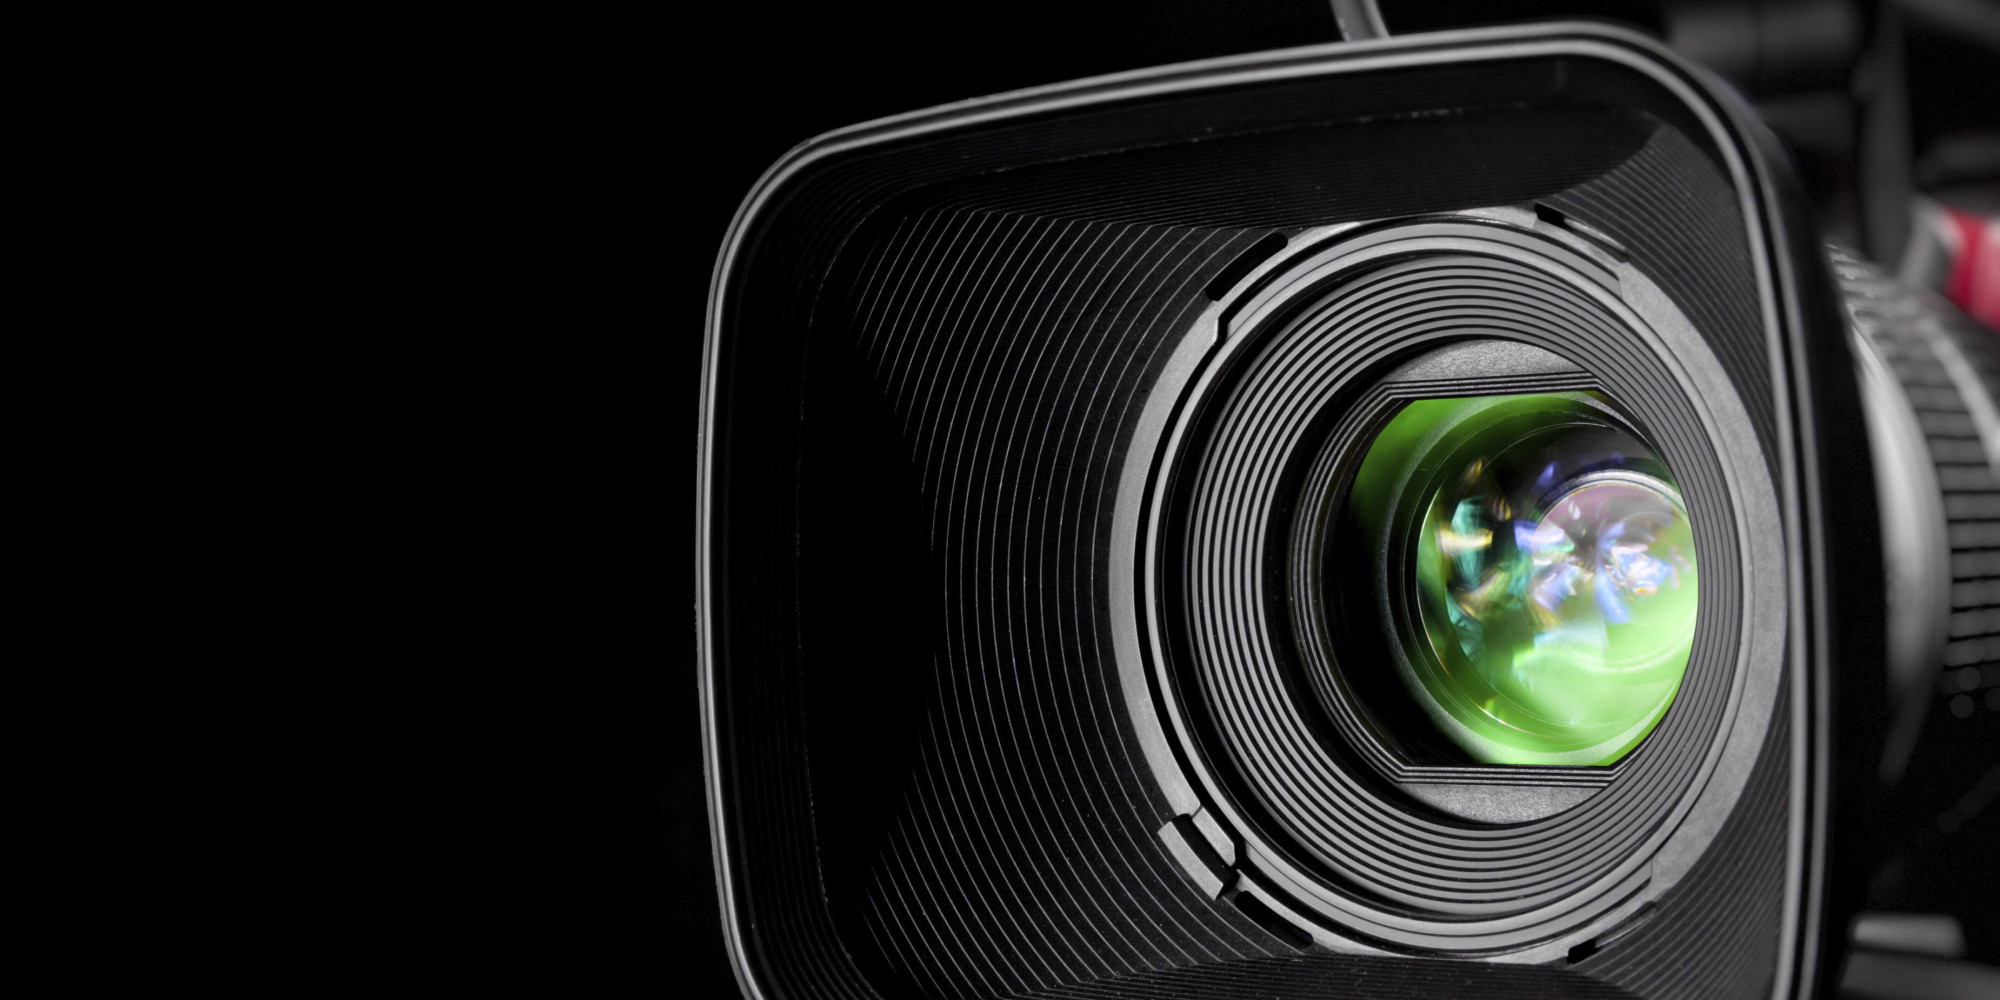 Best Video Cameras & Camcorders Reviewed in 2017  Sleeklens